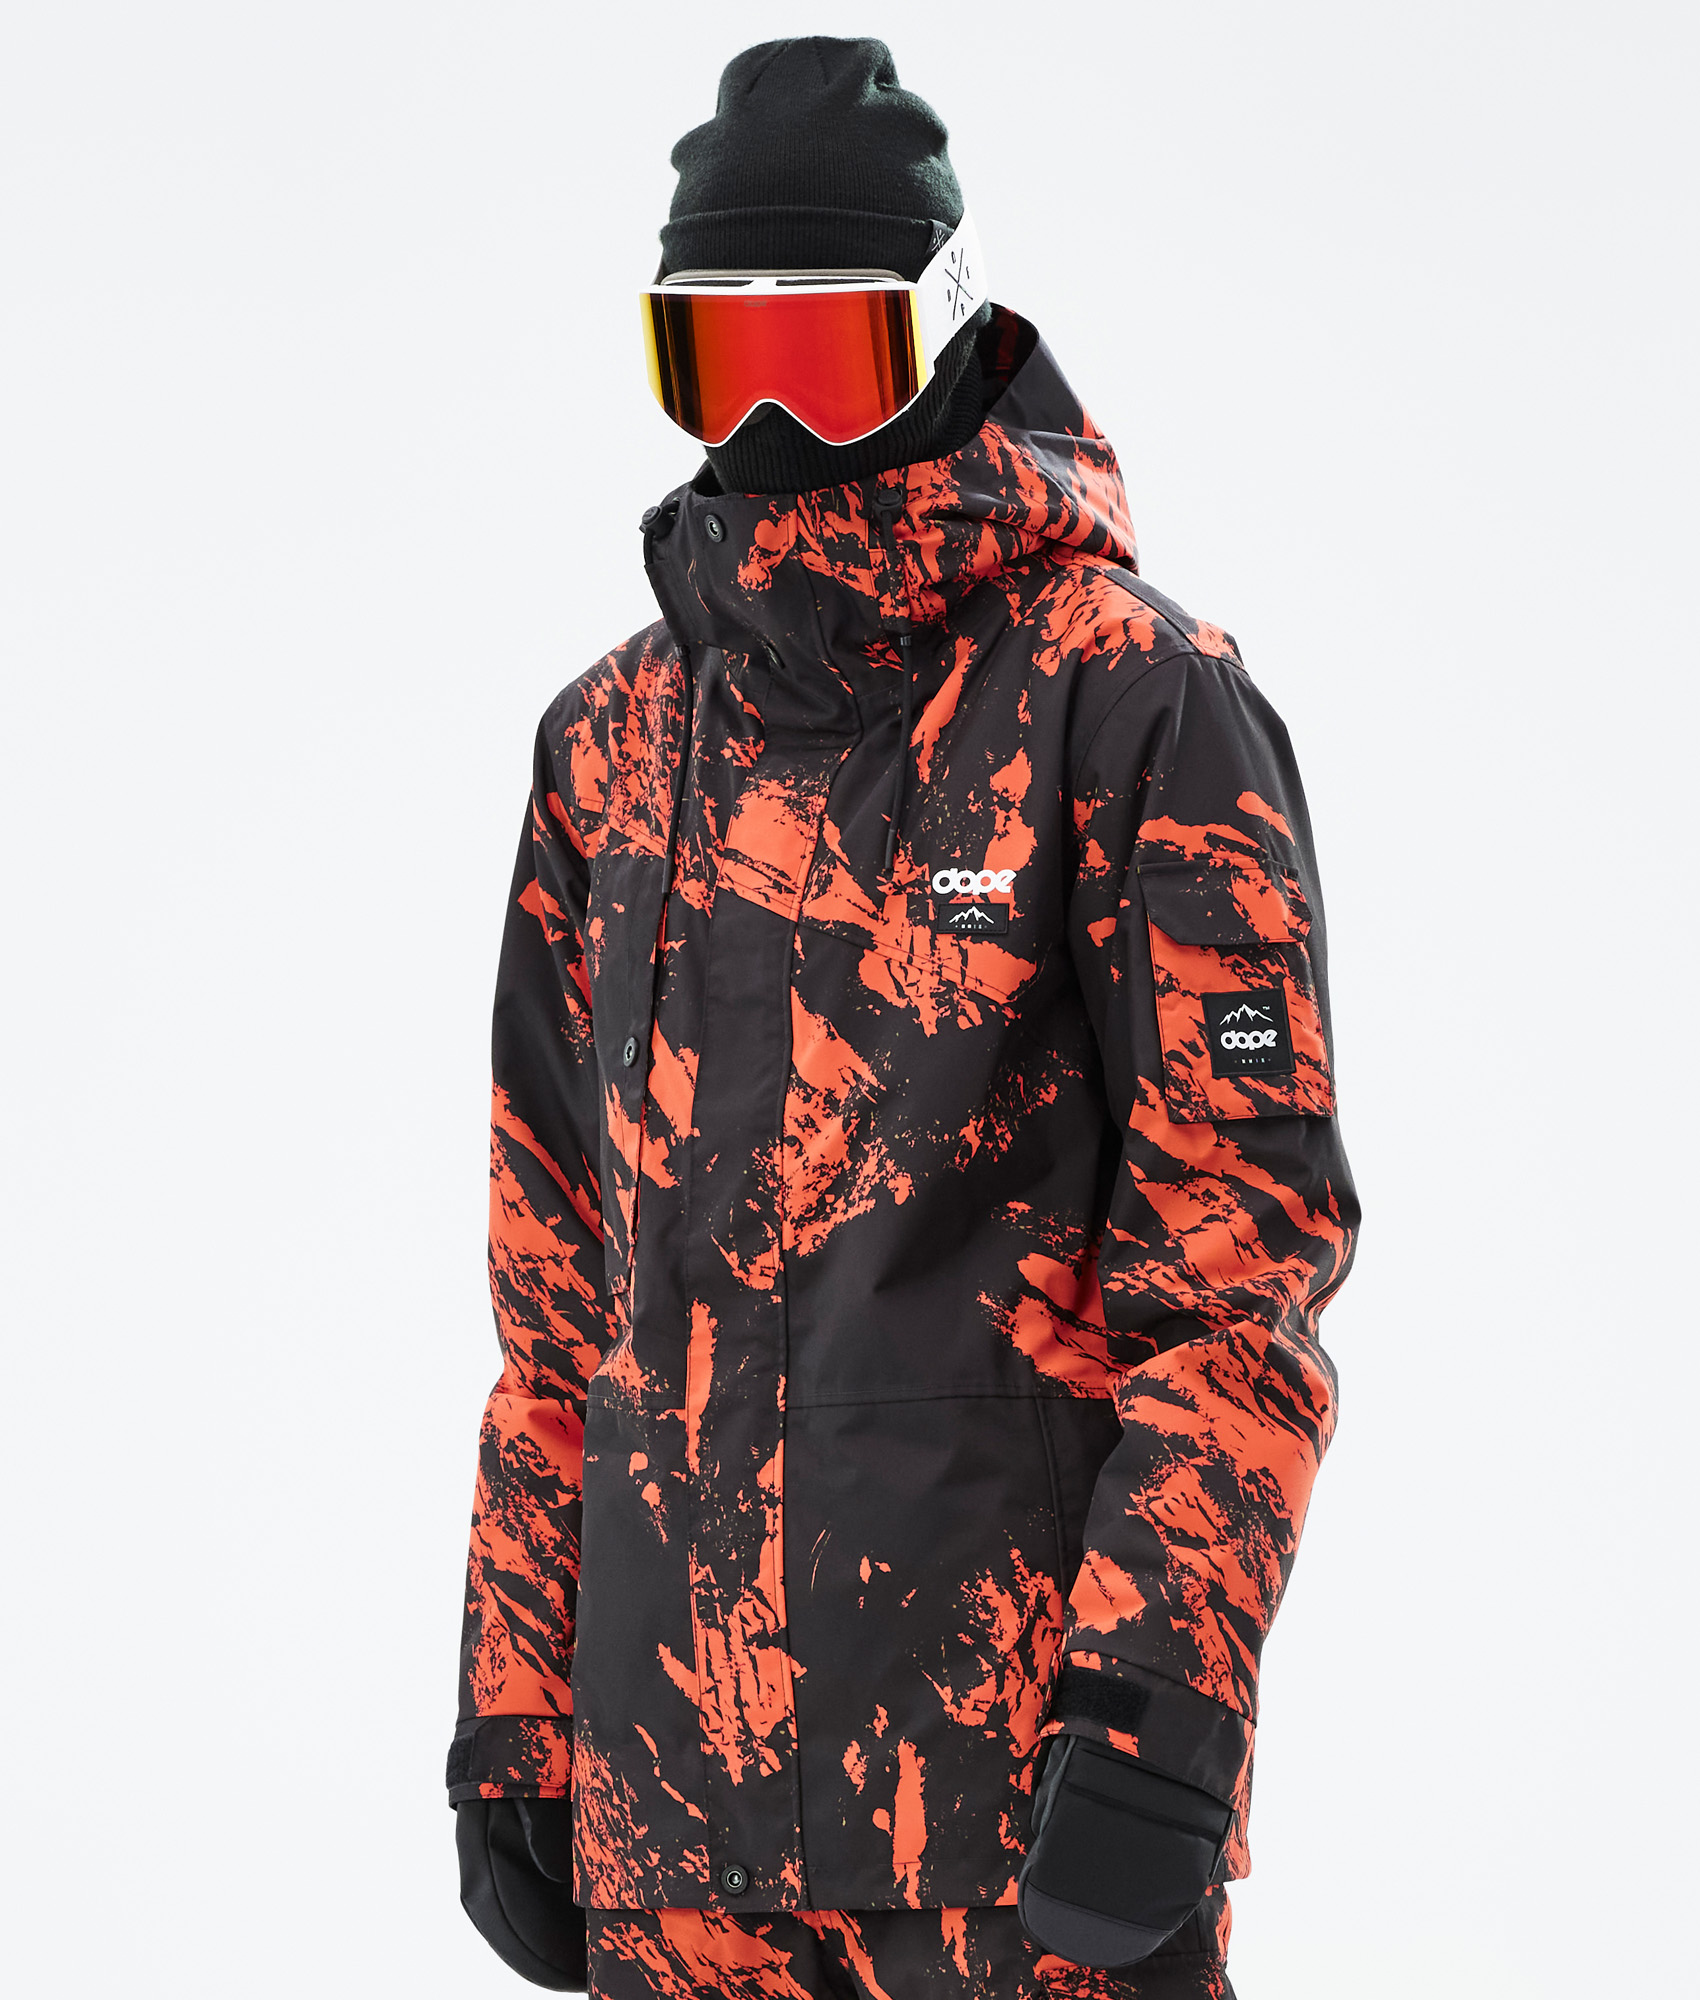 Eq Emotional Quality Jacket Men's Snowboard Jacket Skiing Size 60 Jacket |  eBay